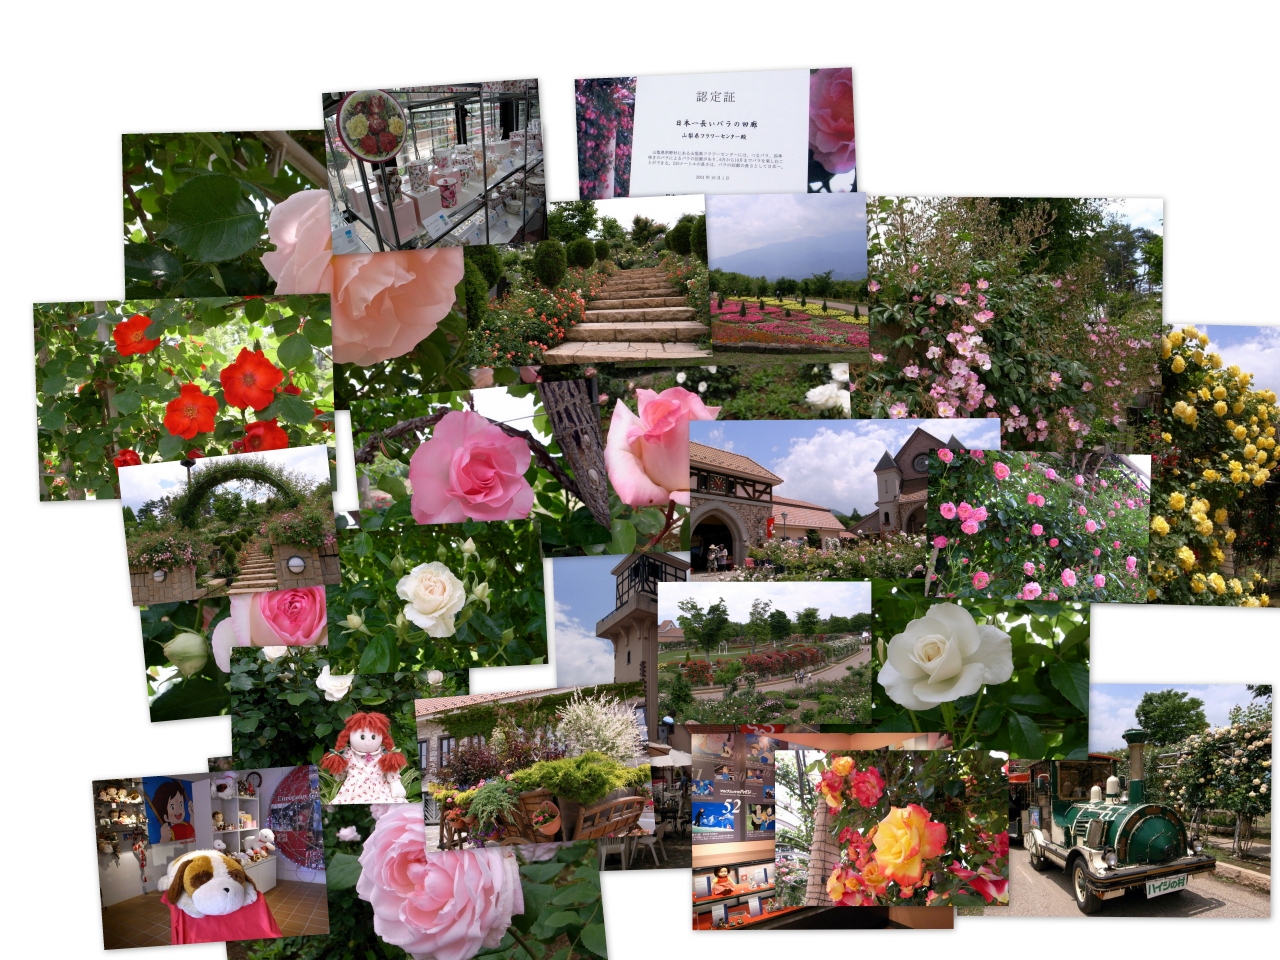 ハイジの村 日本一長い薔薇の回廊 明野 須玉 山梨県 の旅行記 ブログ By Hajiさん フォートラベル